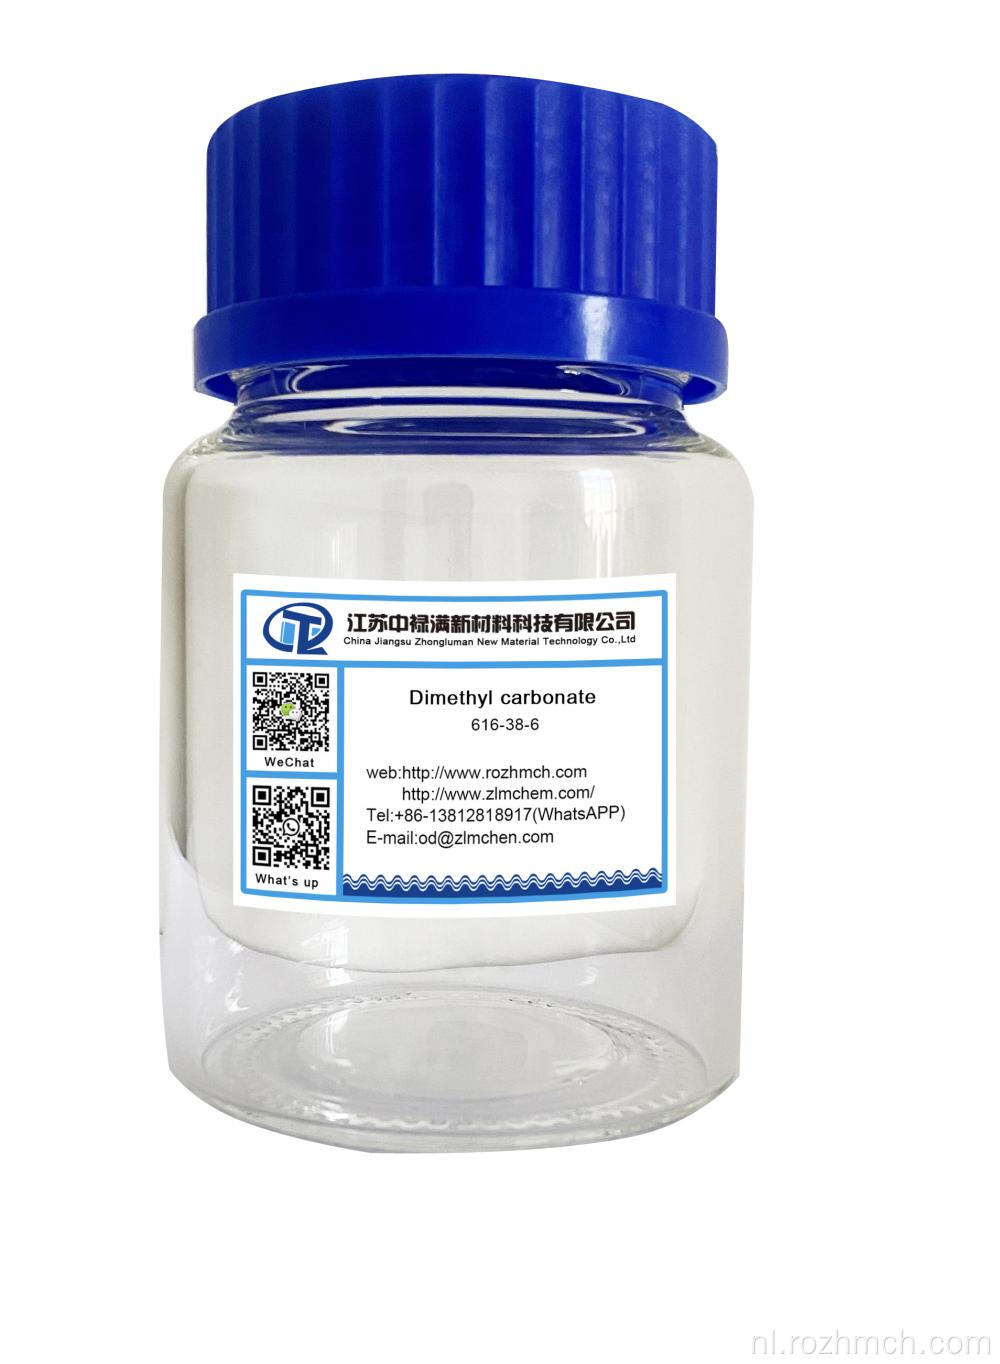 Dimethylcarbonaat DMC CAS nr. 616-38-6